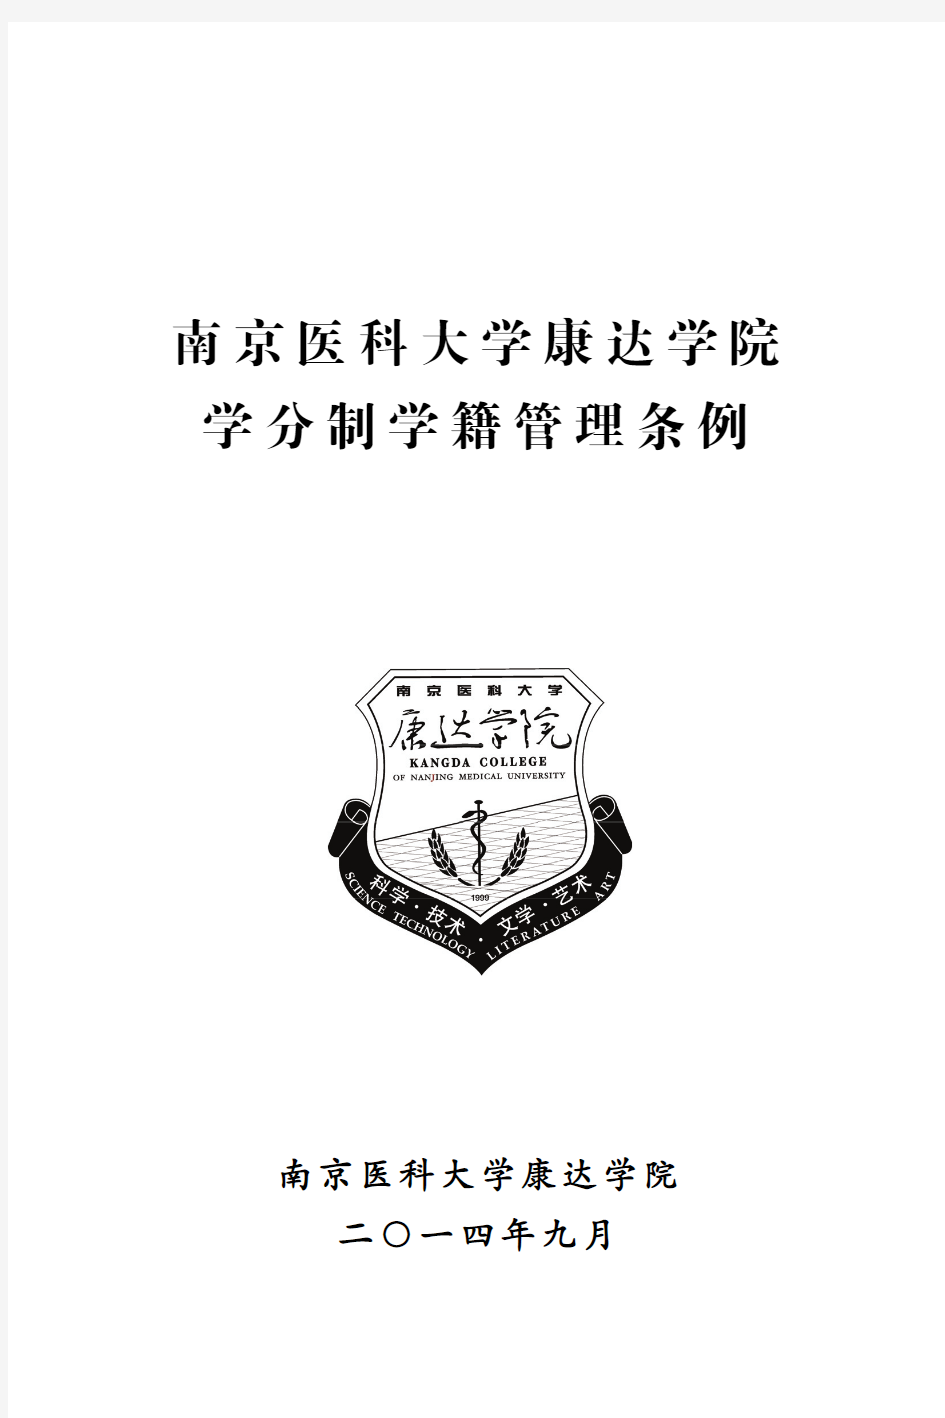 南京医科大学康达学院学分制学籍管理条例